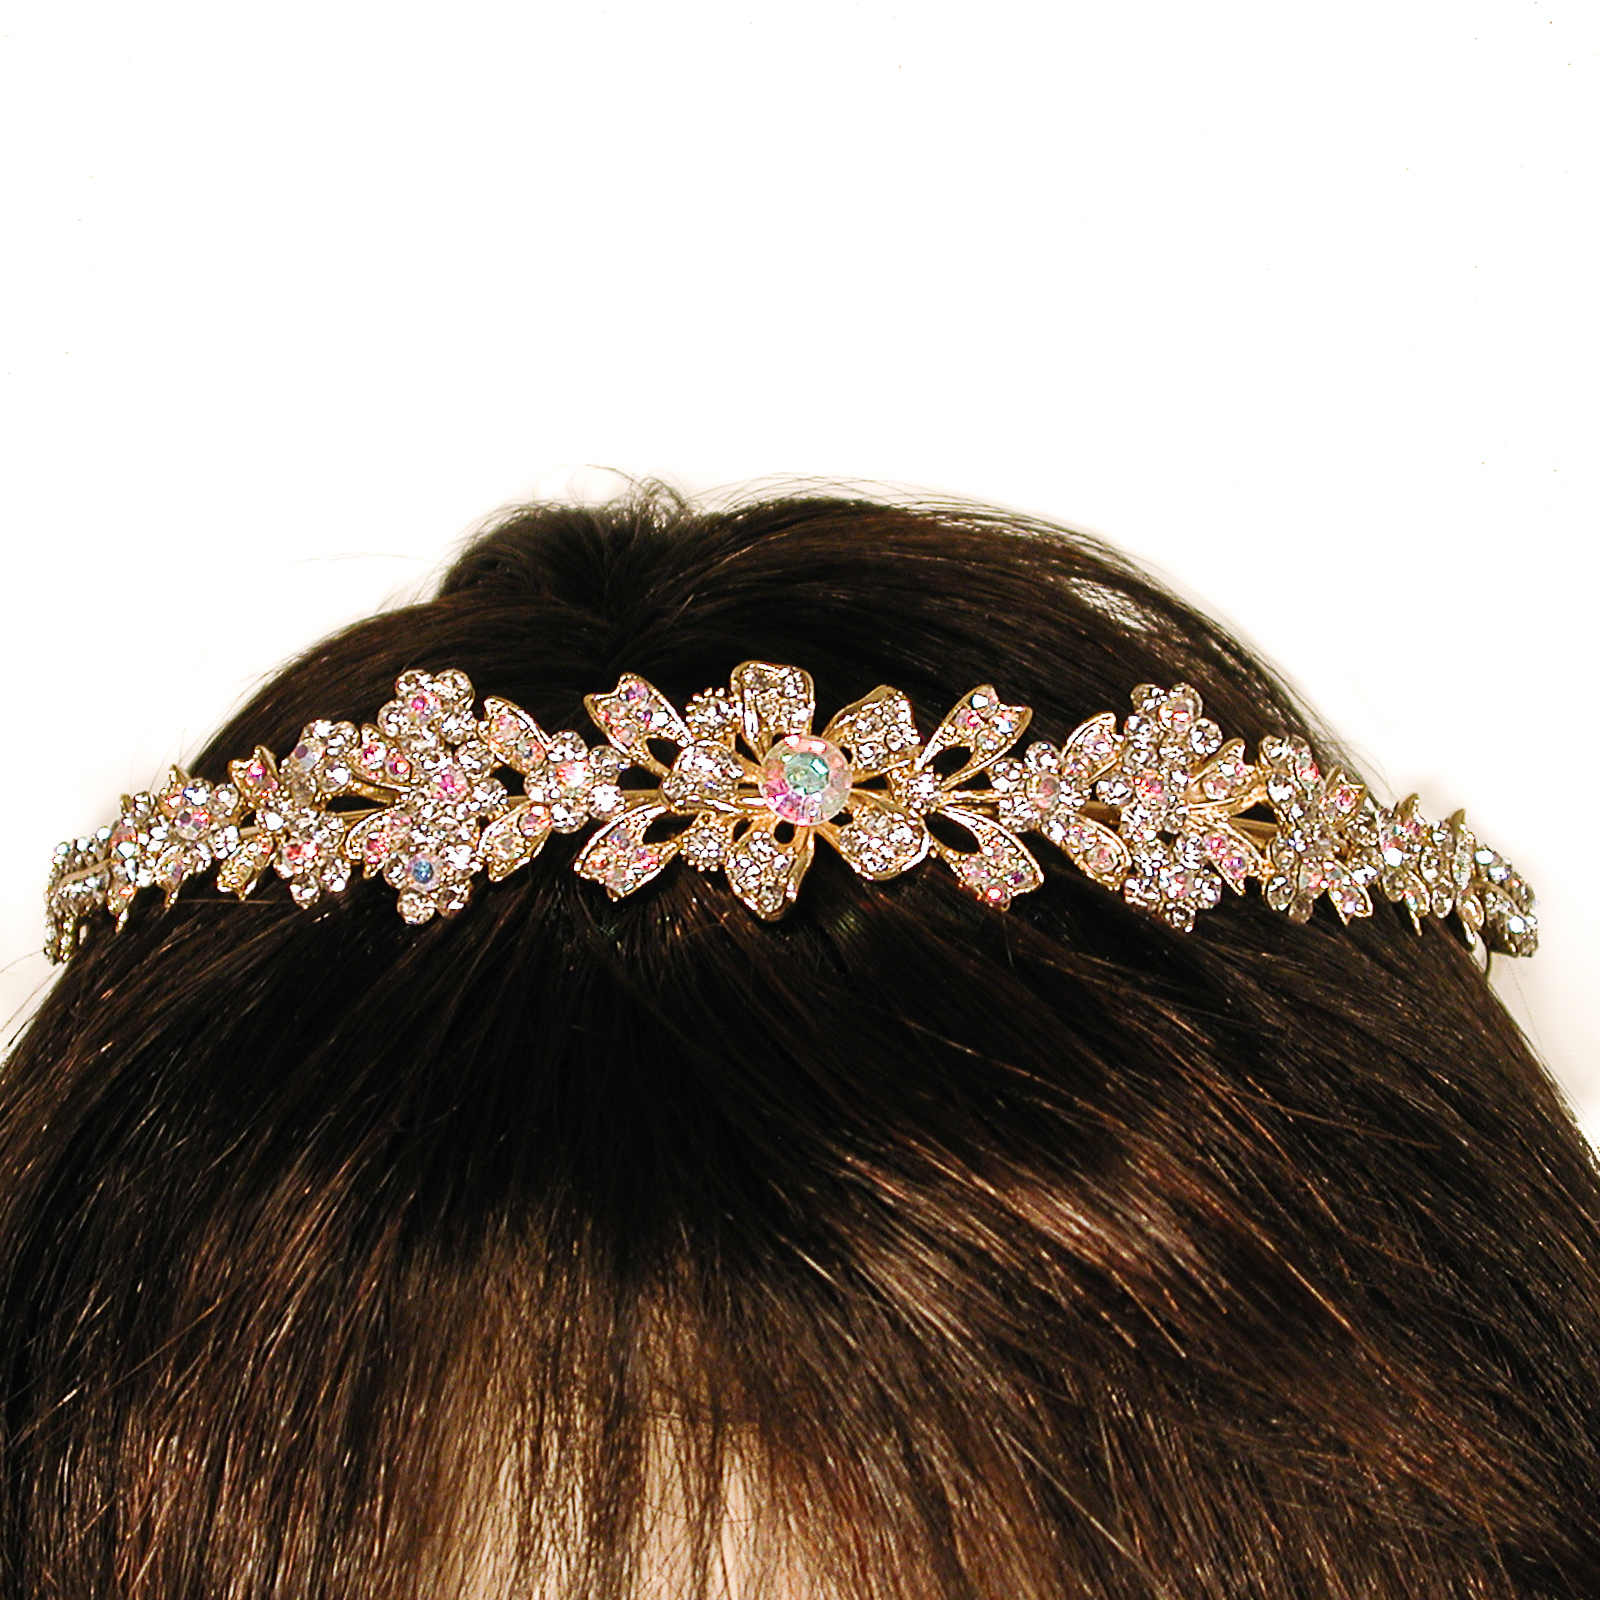 Sparkling Crystal Rhinestone Crown or Headband, a fashion accessorie - Evening Elegance